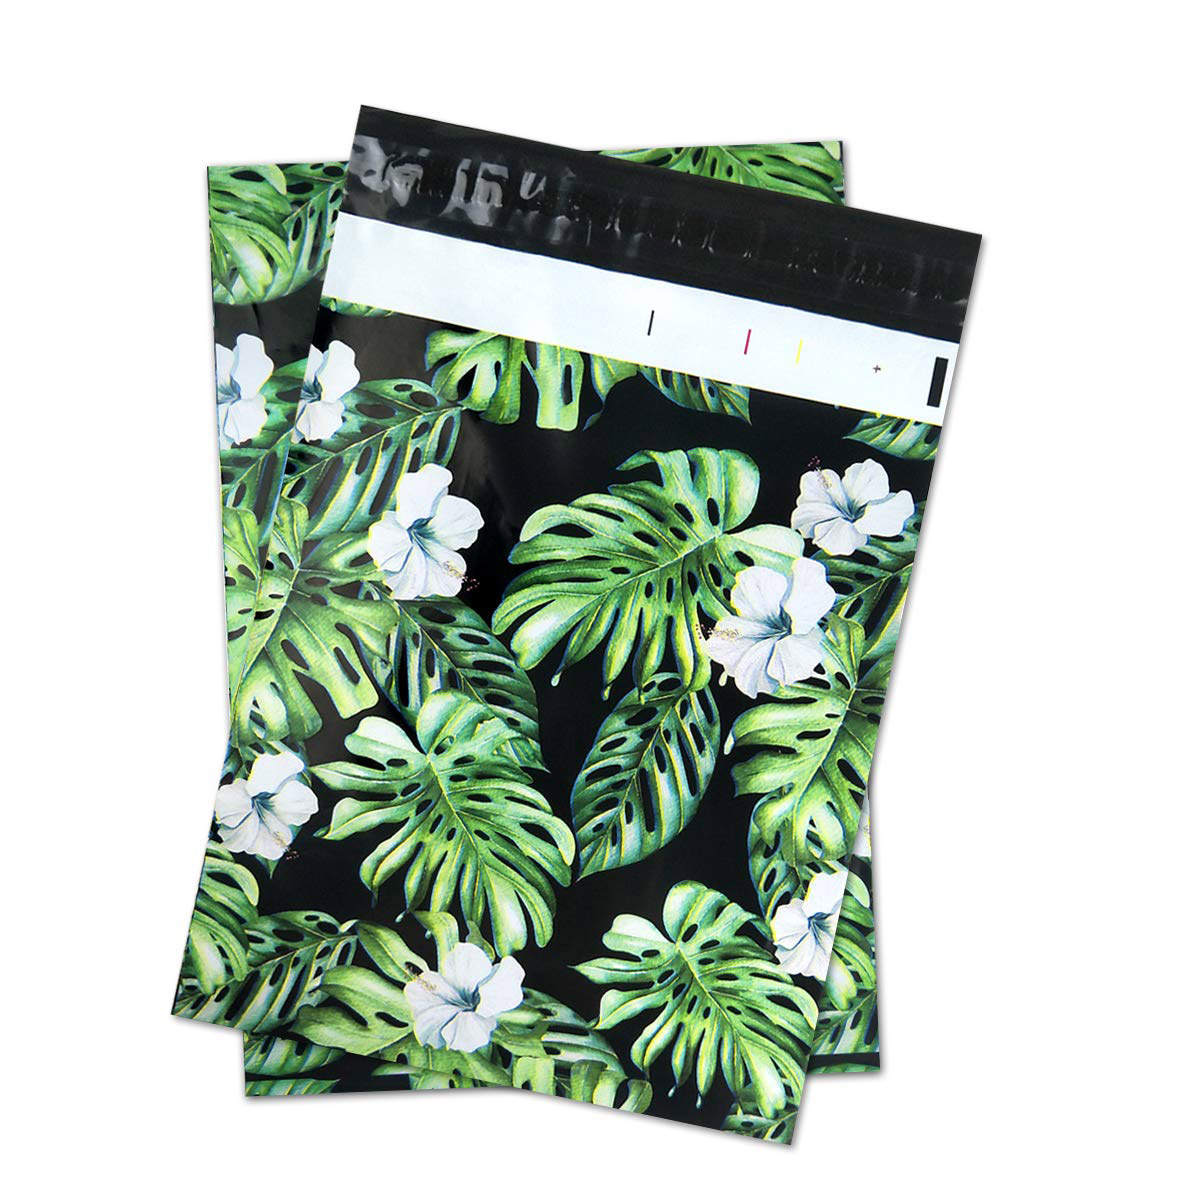 एक्सप्रेस डिलीवरी कंपनी के लिए सुंदर रंग मेलर बायो-प्लास्टिक मेलिंग बैग और ई-कॉमर्स शिपिंग बैग के लिए कस्टम